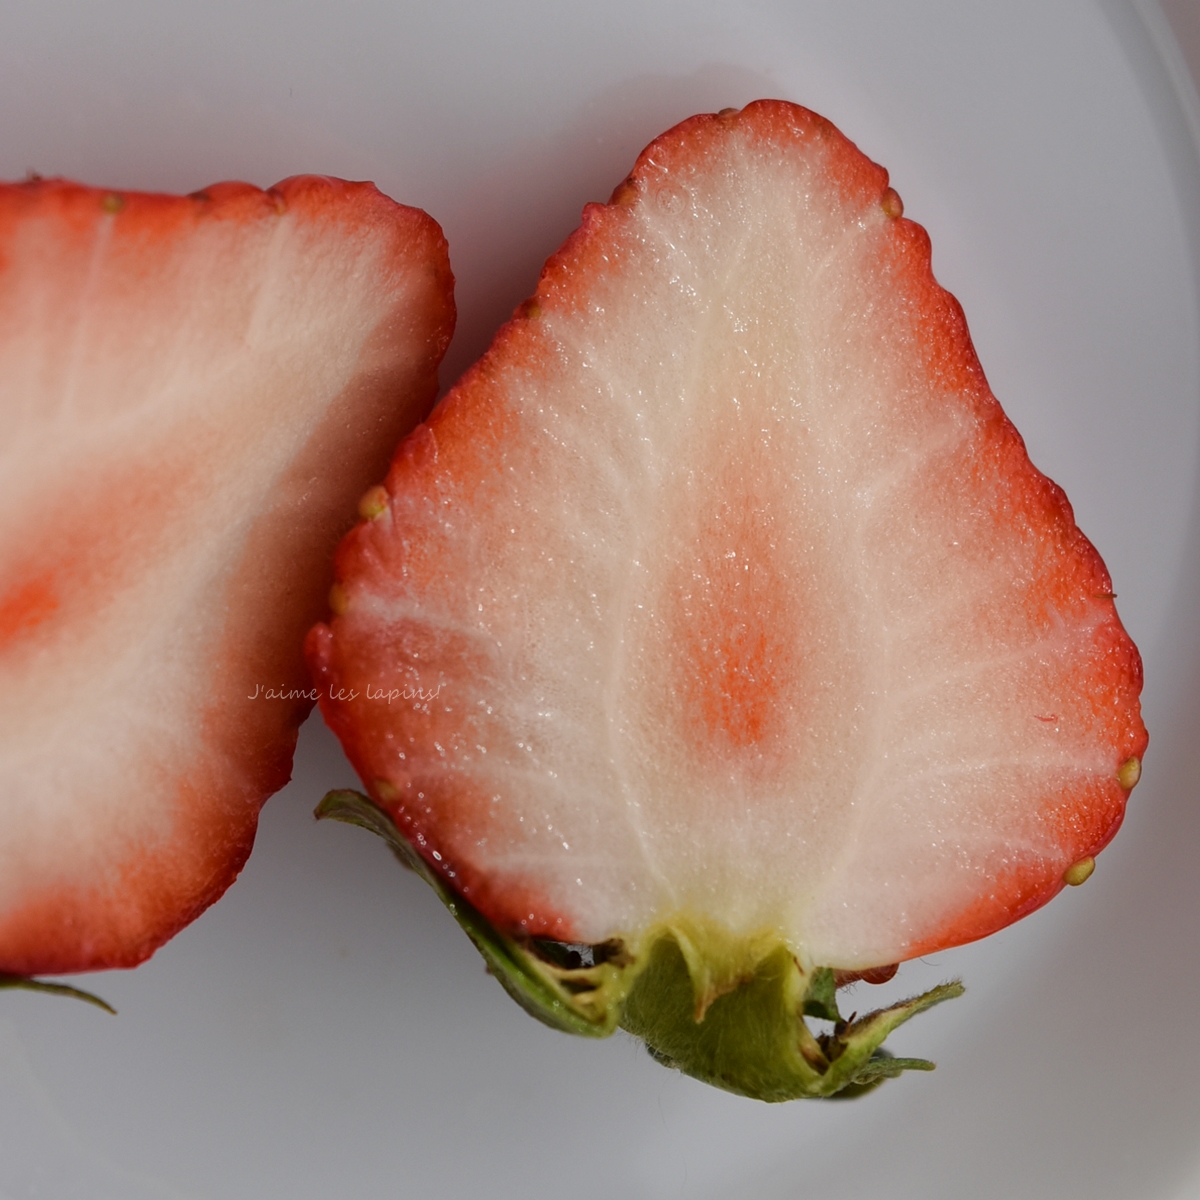 イチゴ「恋みのり」の断面